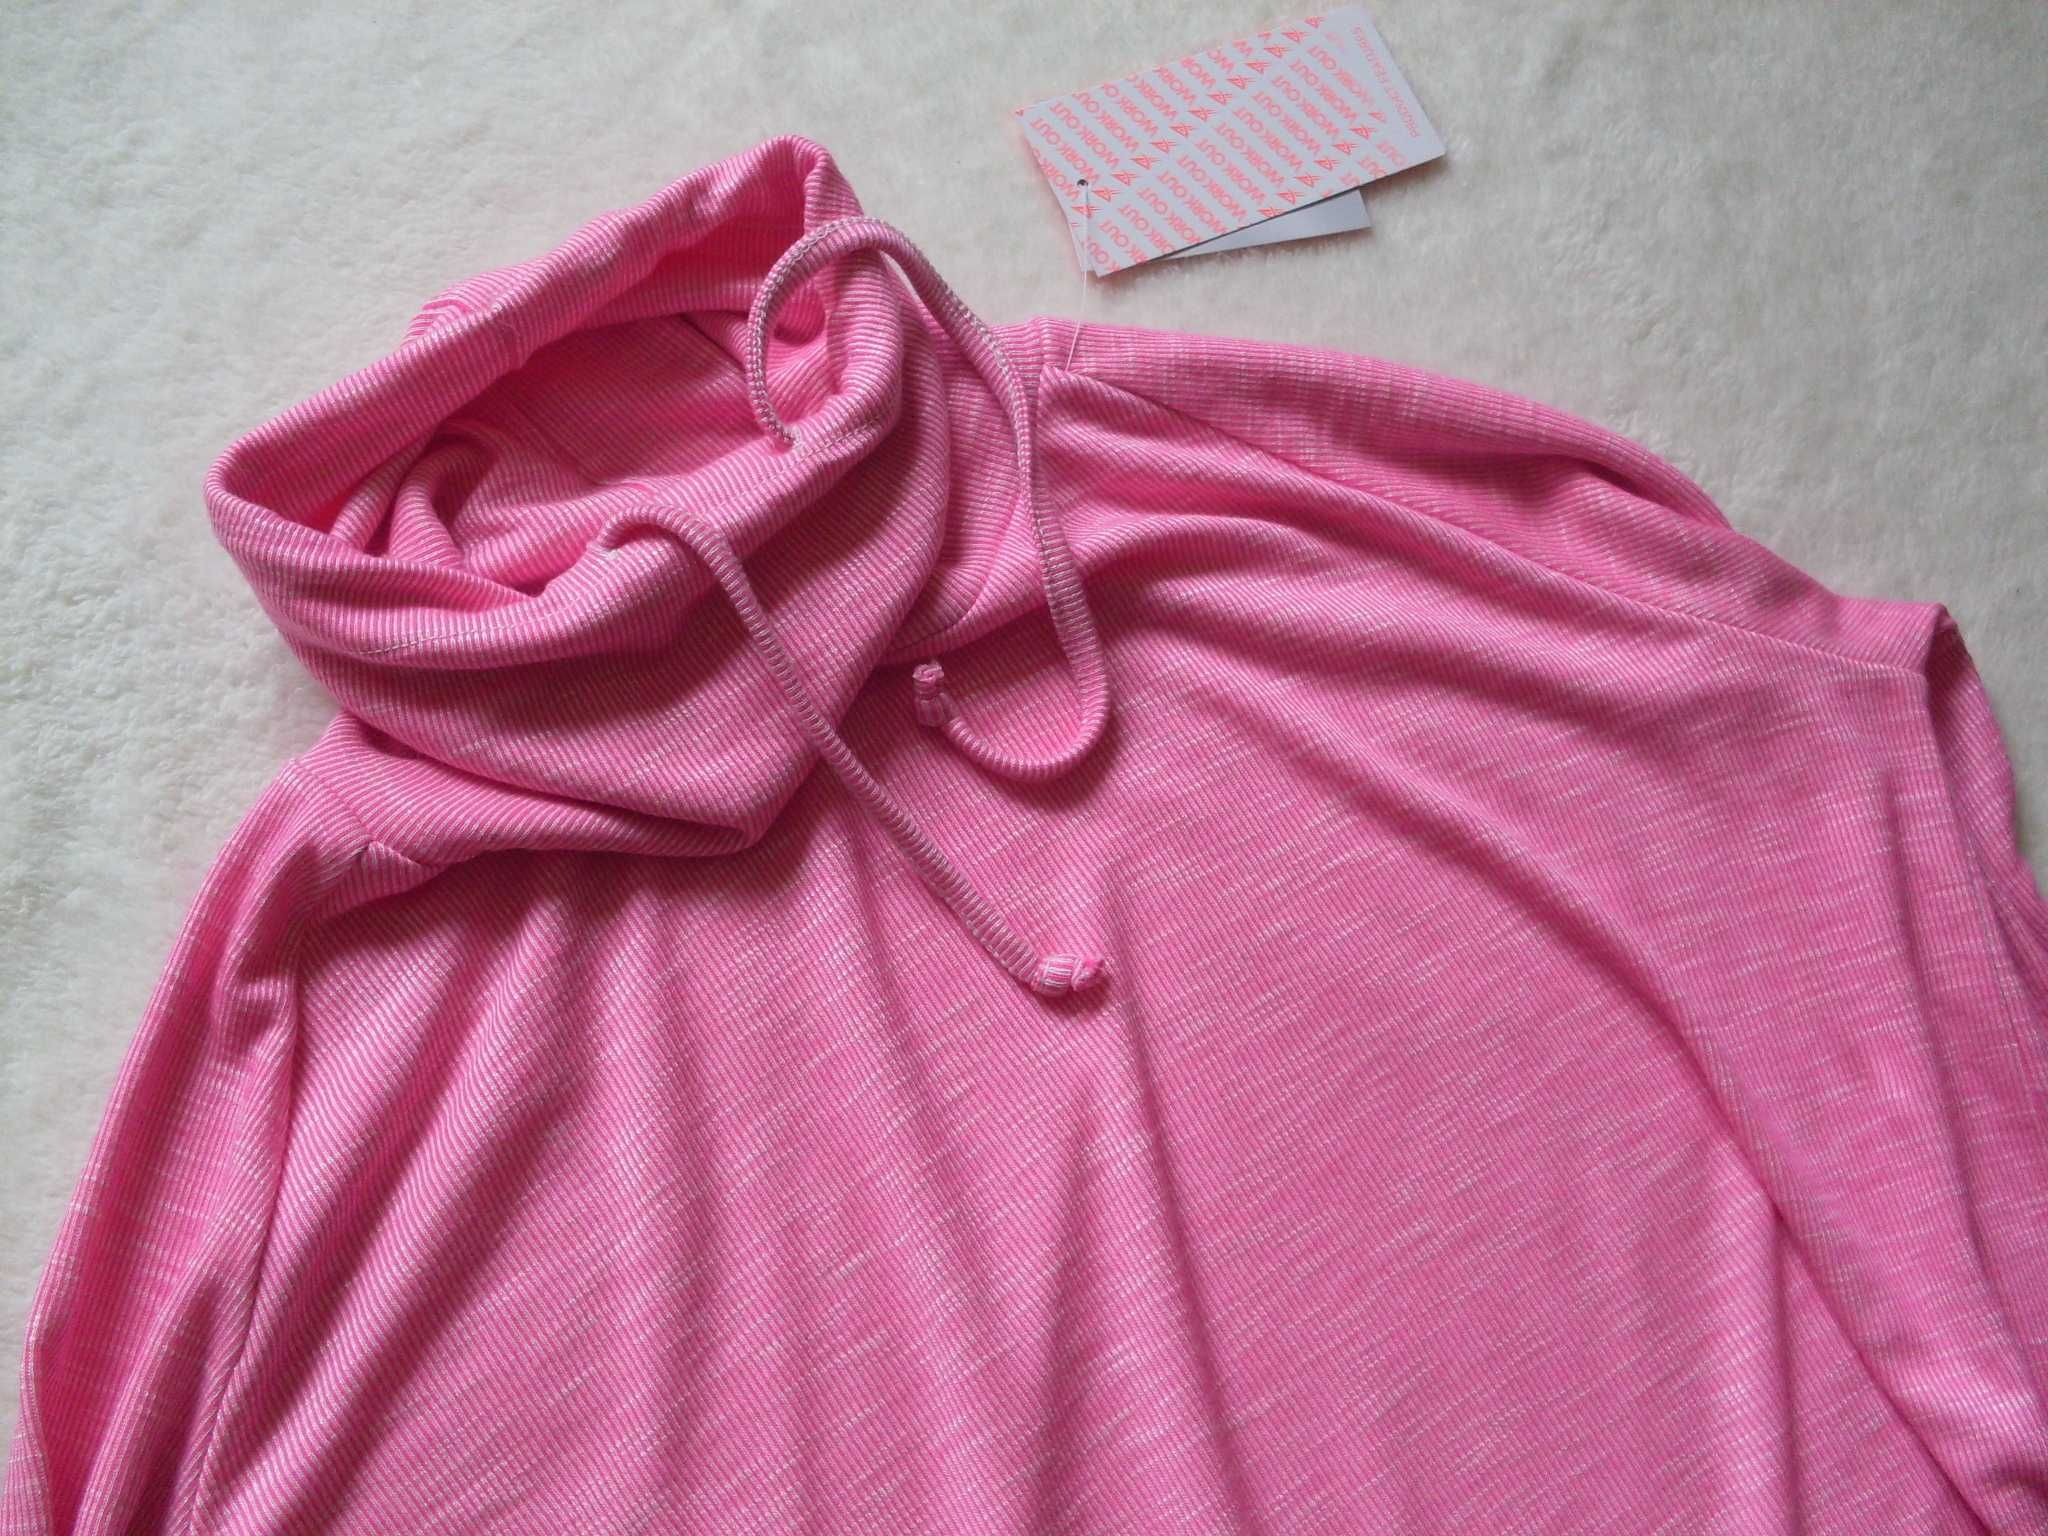 Atmosphere Primark bluza sportowa top sportowy różowa stójka melanżowa